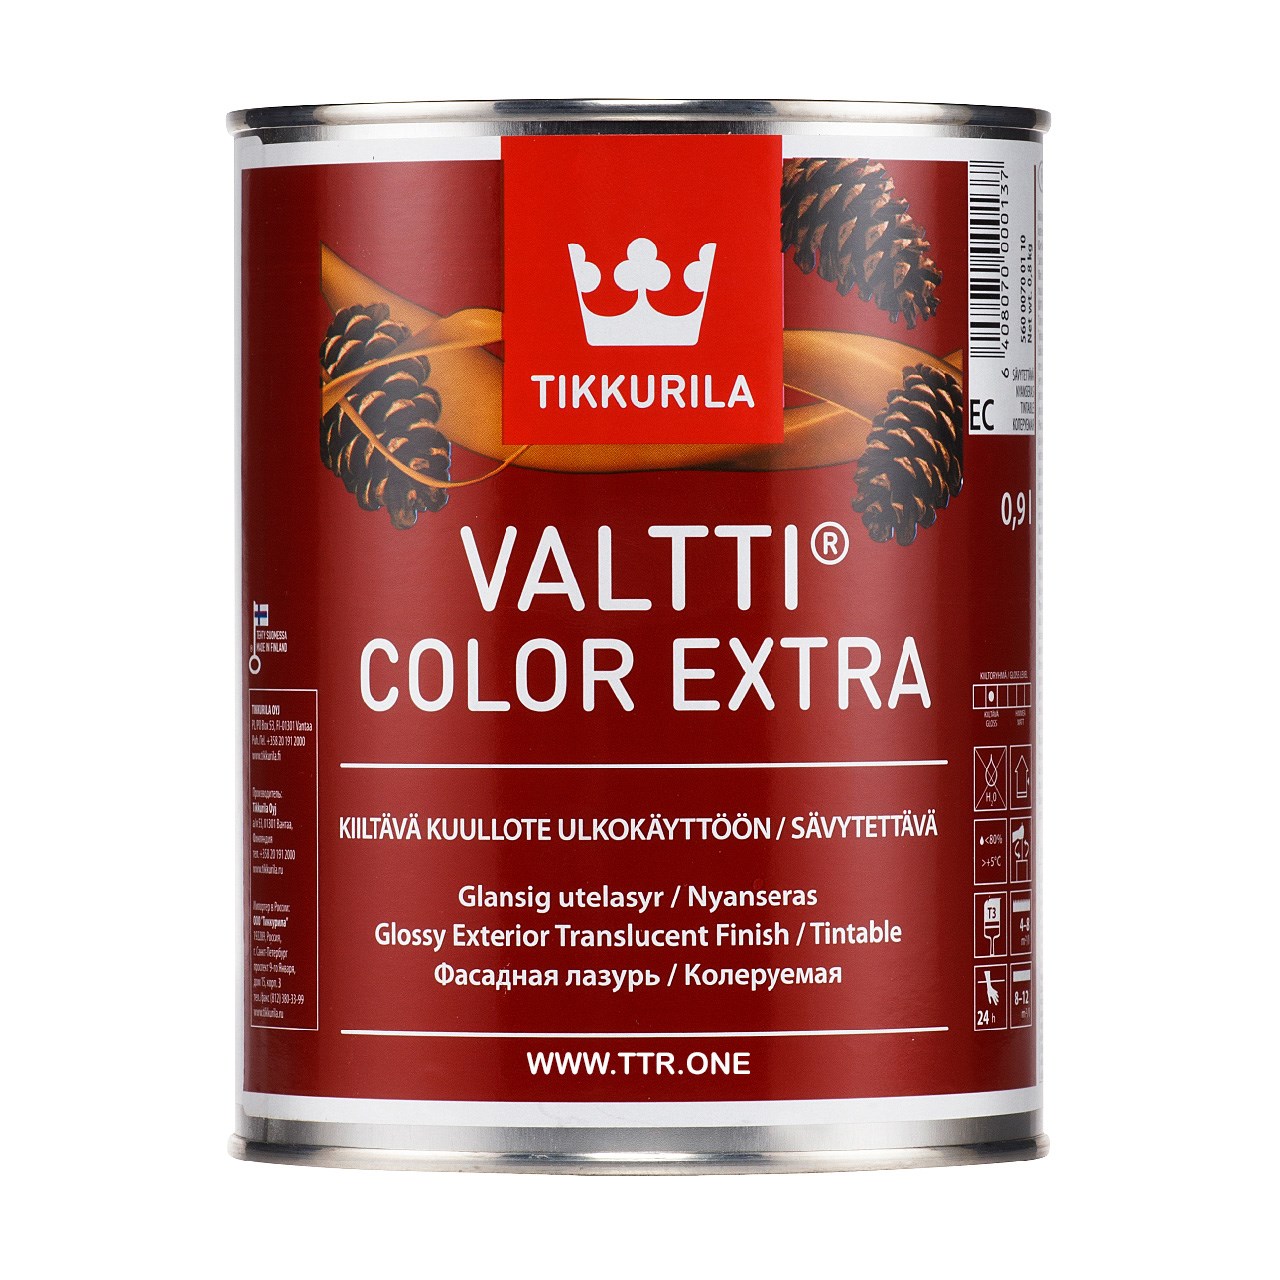 رنگ پایه روغن تیکوریلا مدل Valtti Color EXTRA 5071  حجم 1 لیتر